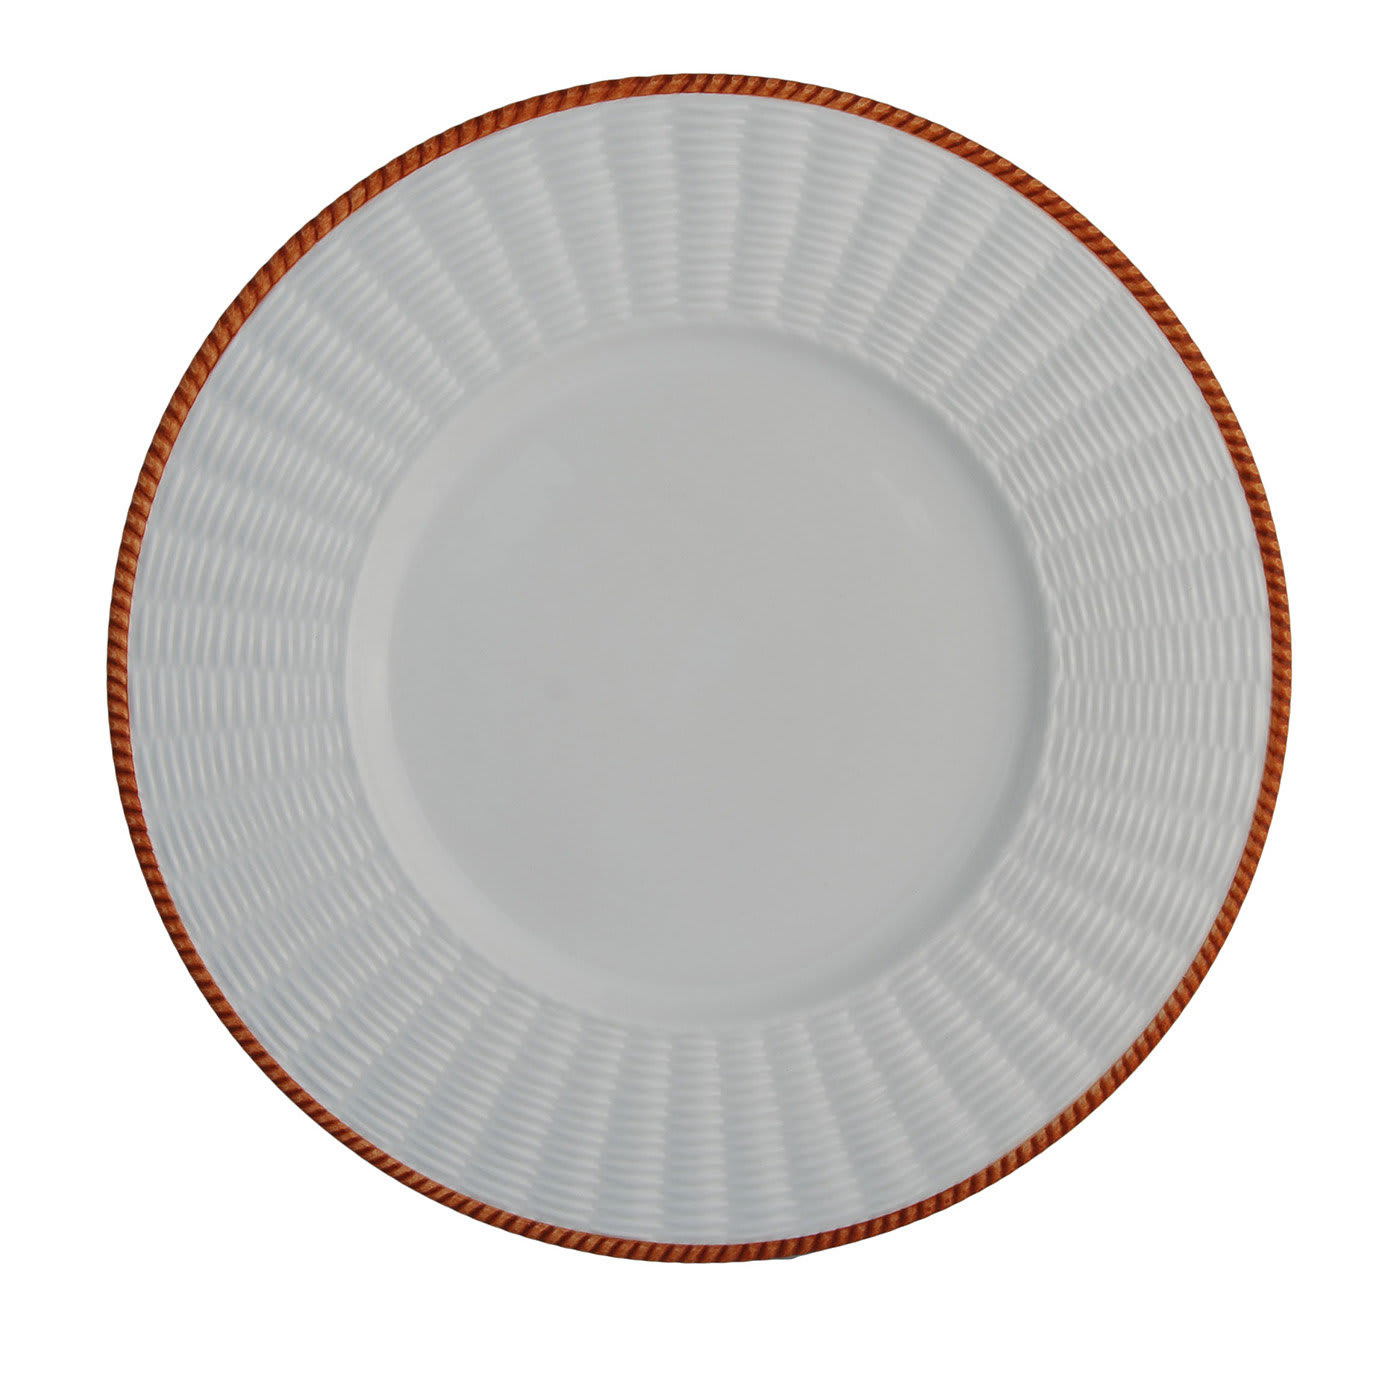 Set of 4 Orange Wicker Plates - Este Ceramiche